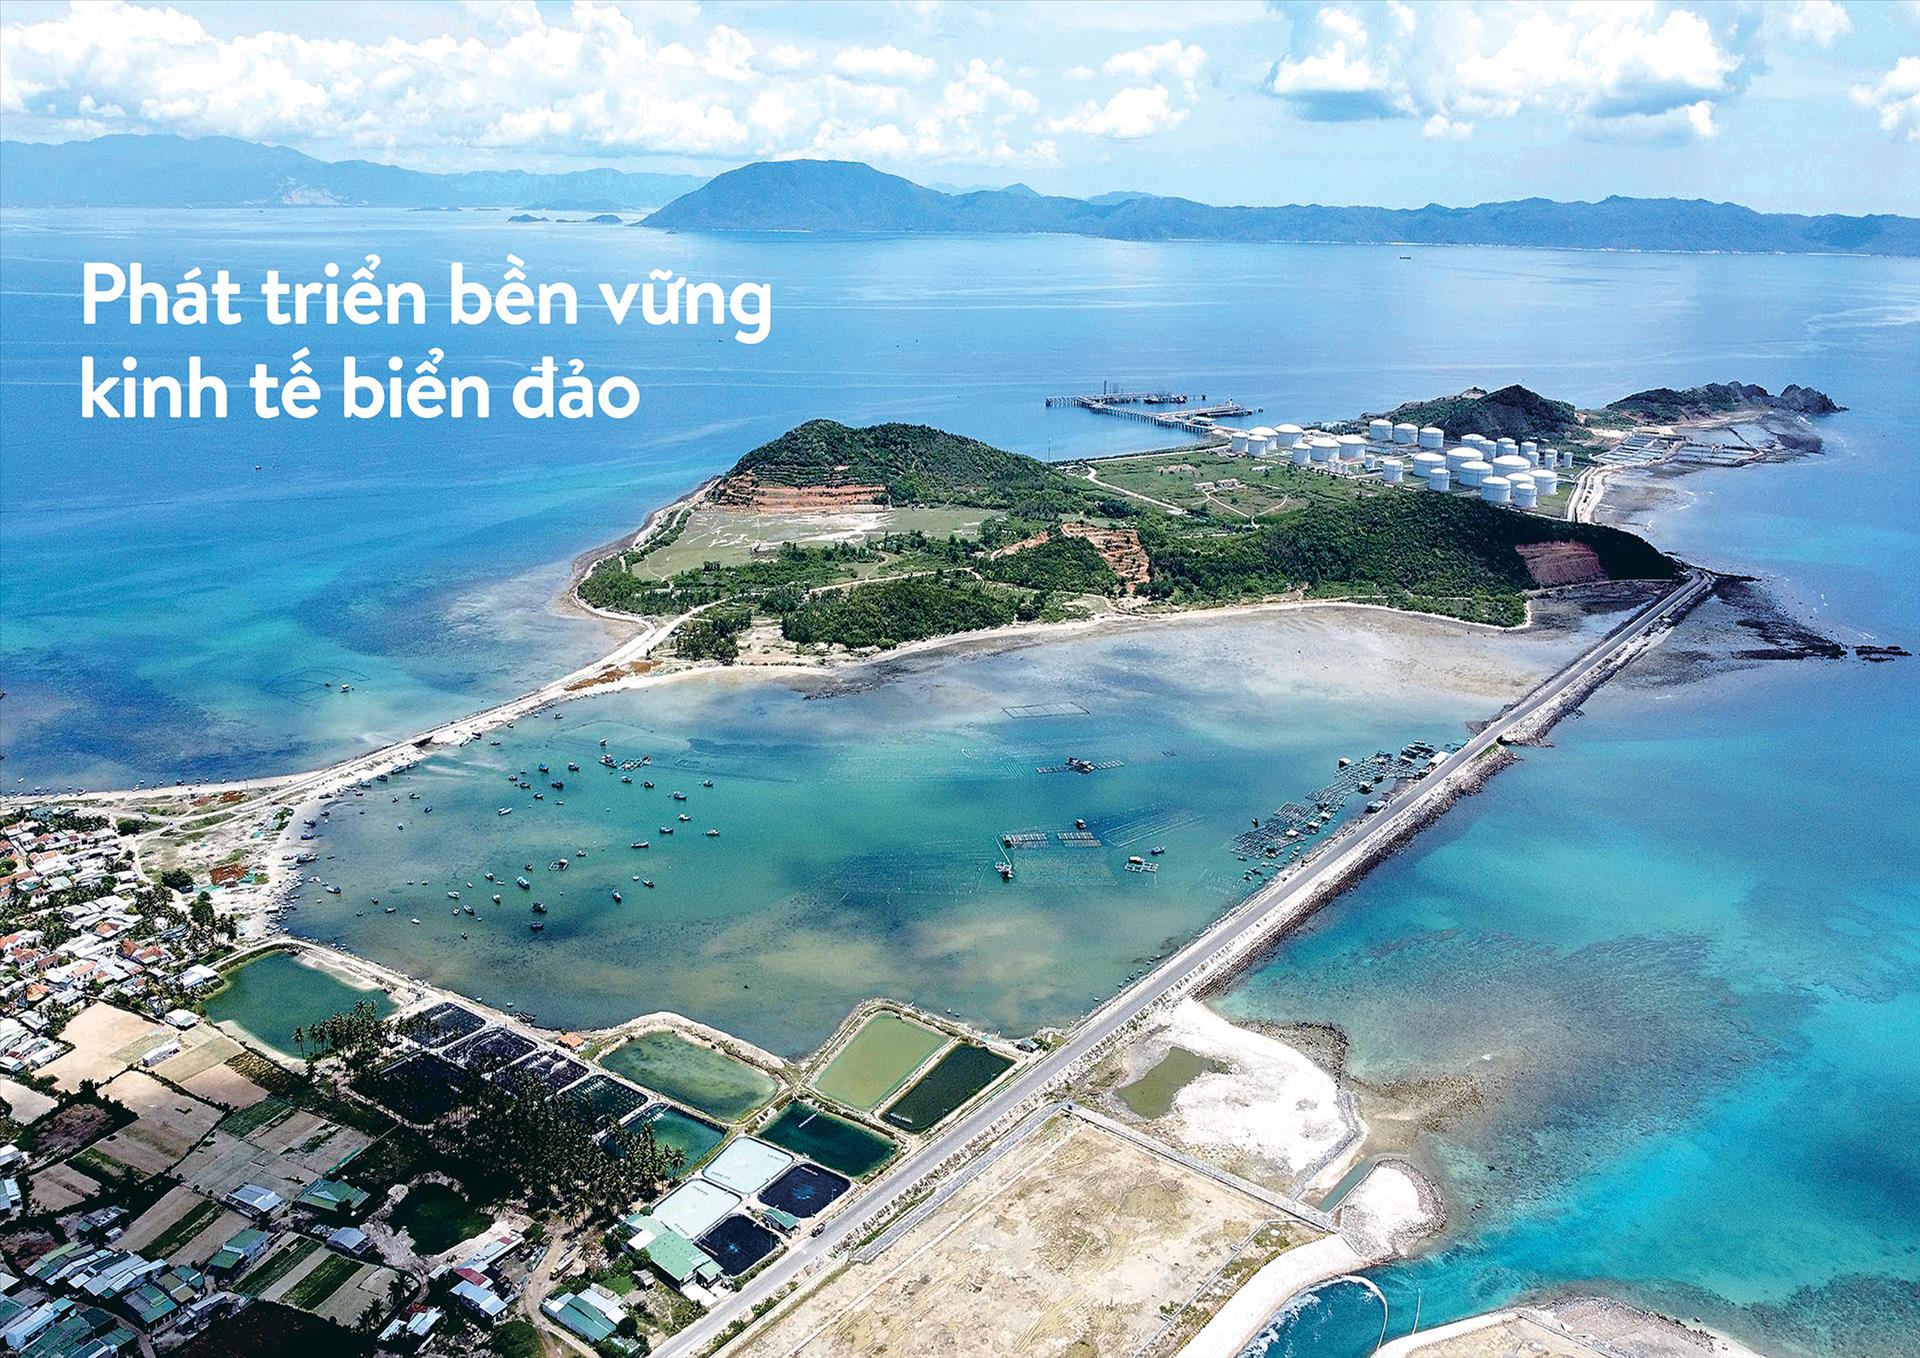 Phát triển bền vững kinh tế biển đảo